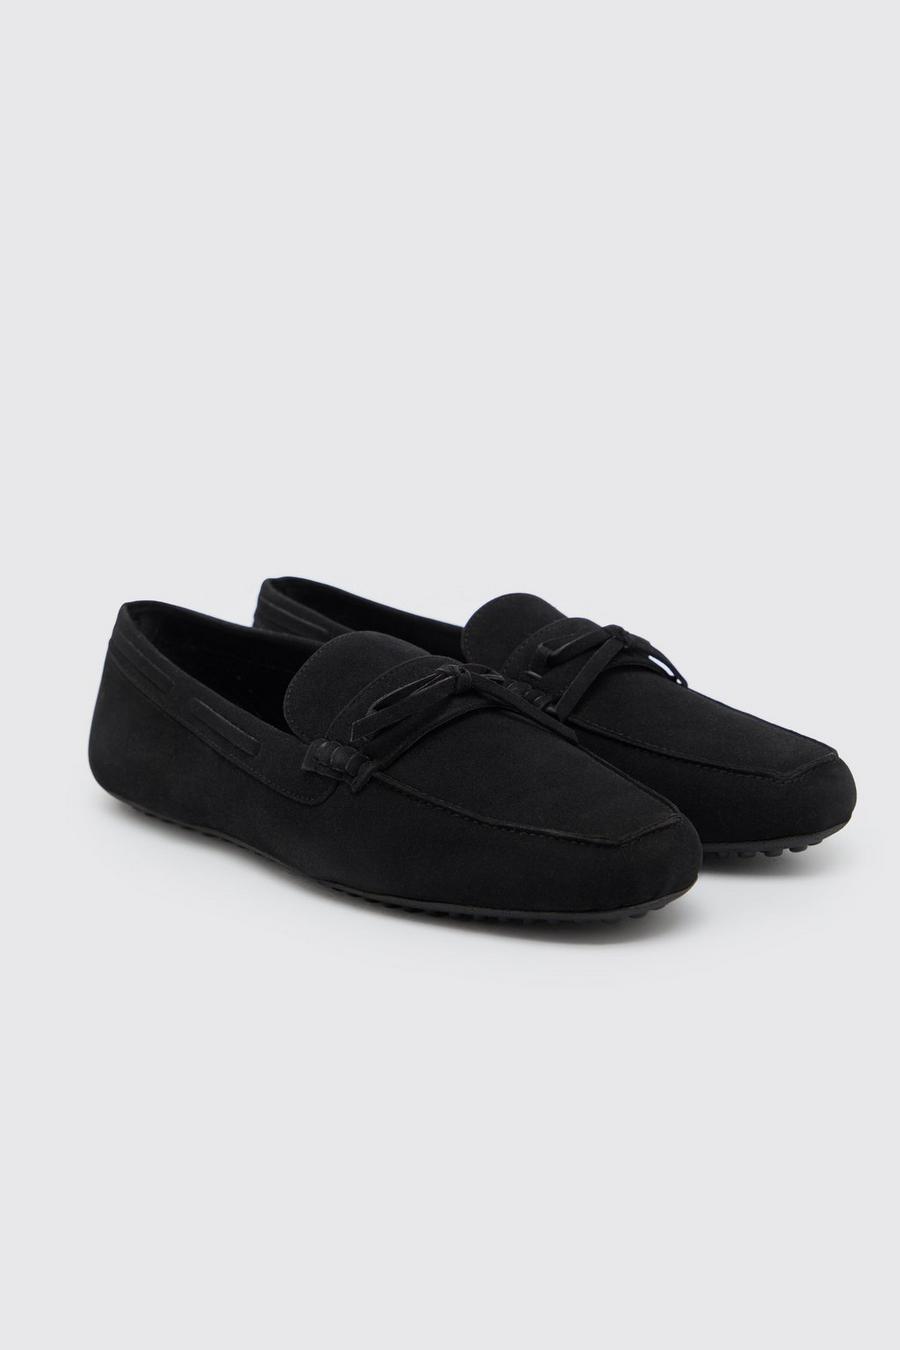 Chaussures en faux daim, Black noir